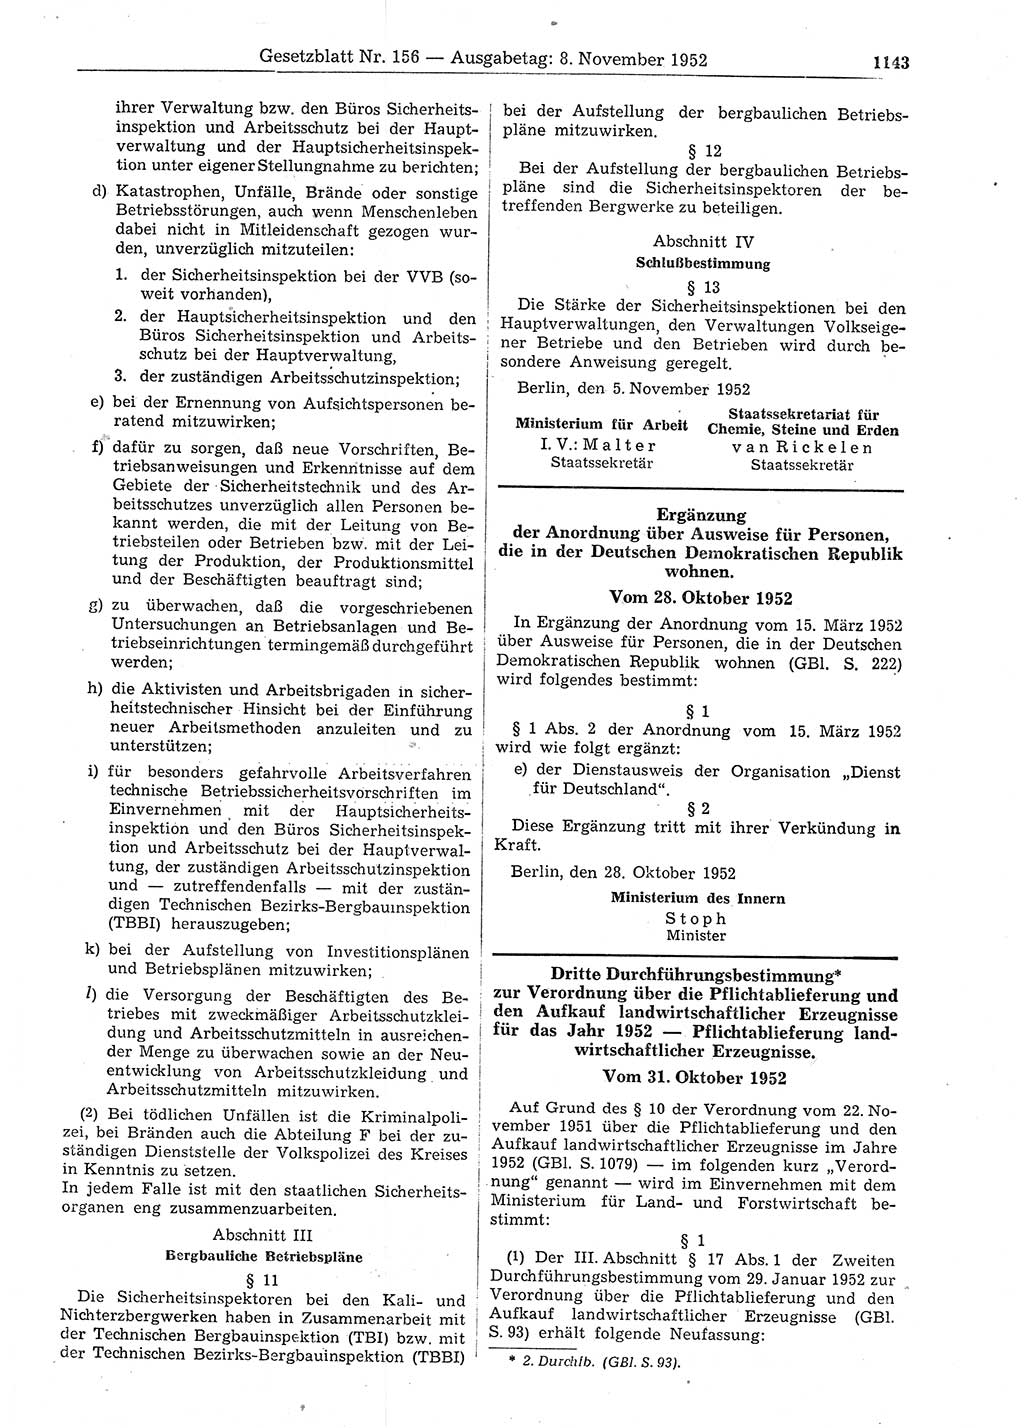 Gesetzblatt (GBl.) der Deutschen Demokratischen Republik (DDR) 1952, Seite 1143 (GBl. DDR 1952, S. 1143)